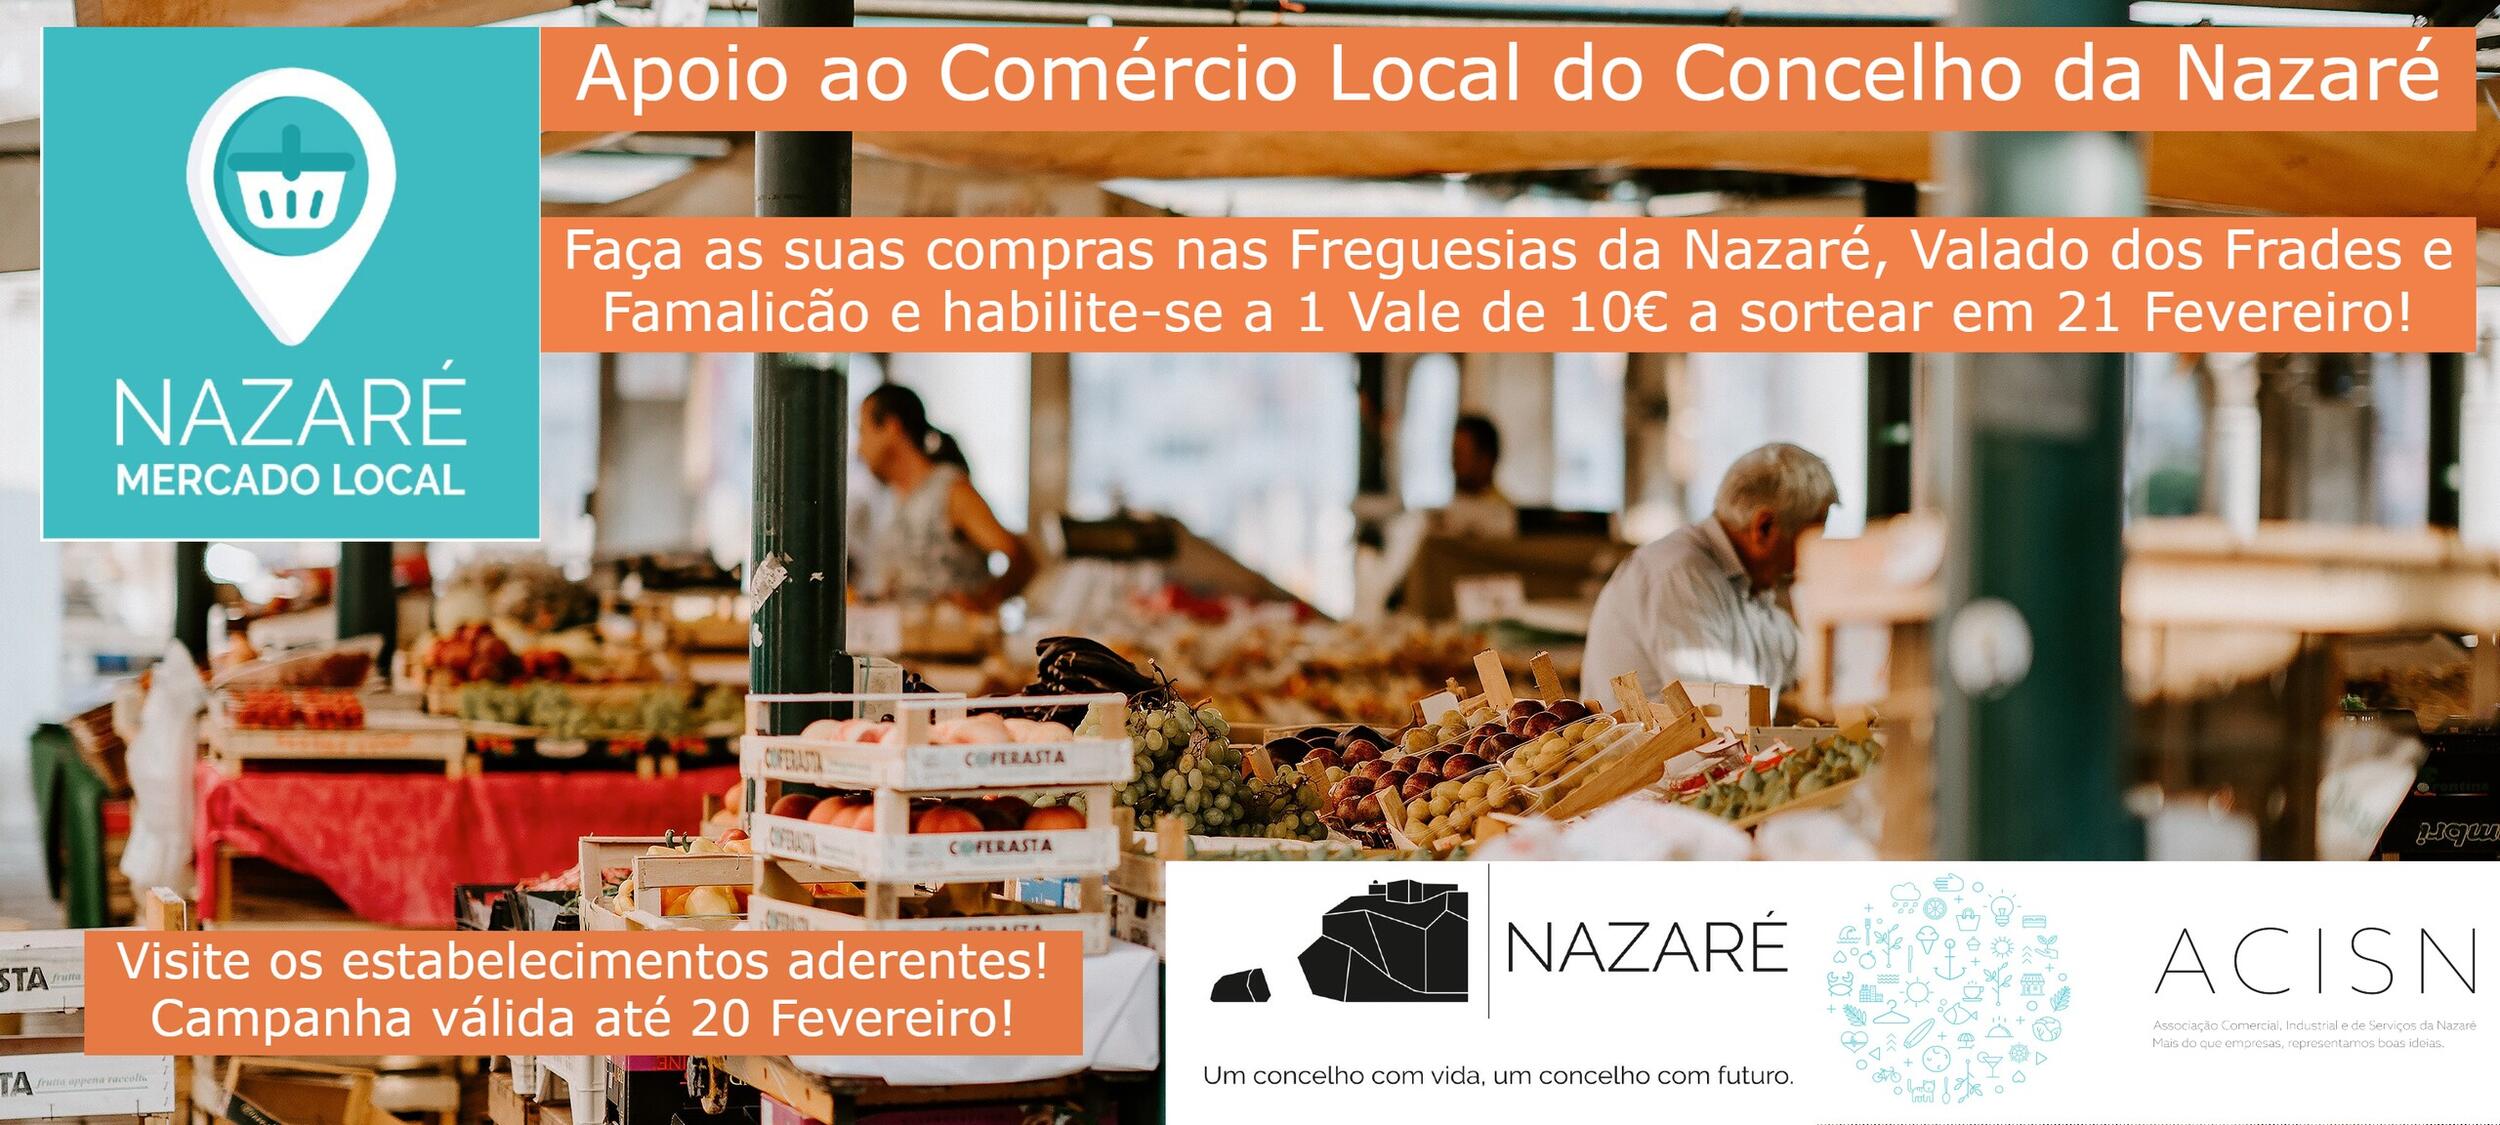 Campanha Mercado Local incentiva às compras no Comércio Local do Concelho da Nazaré